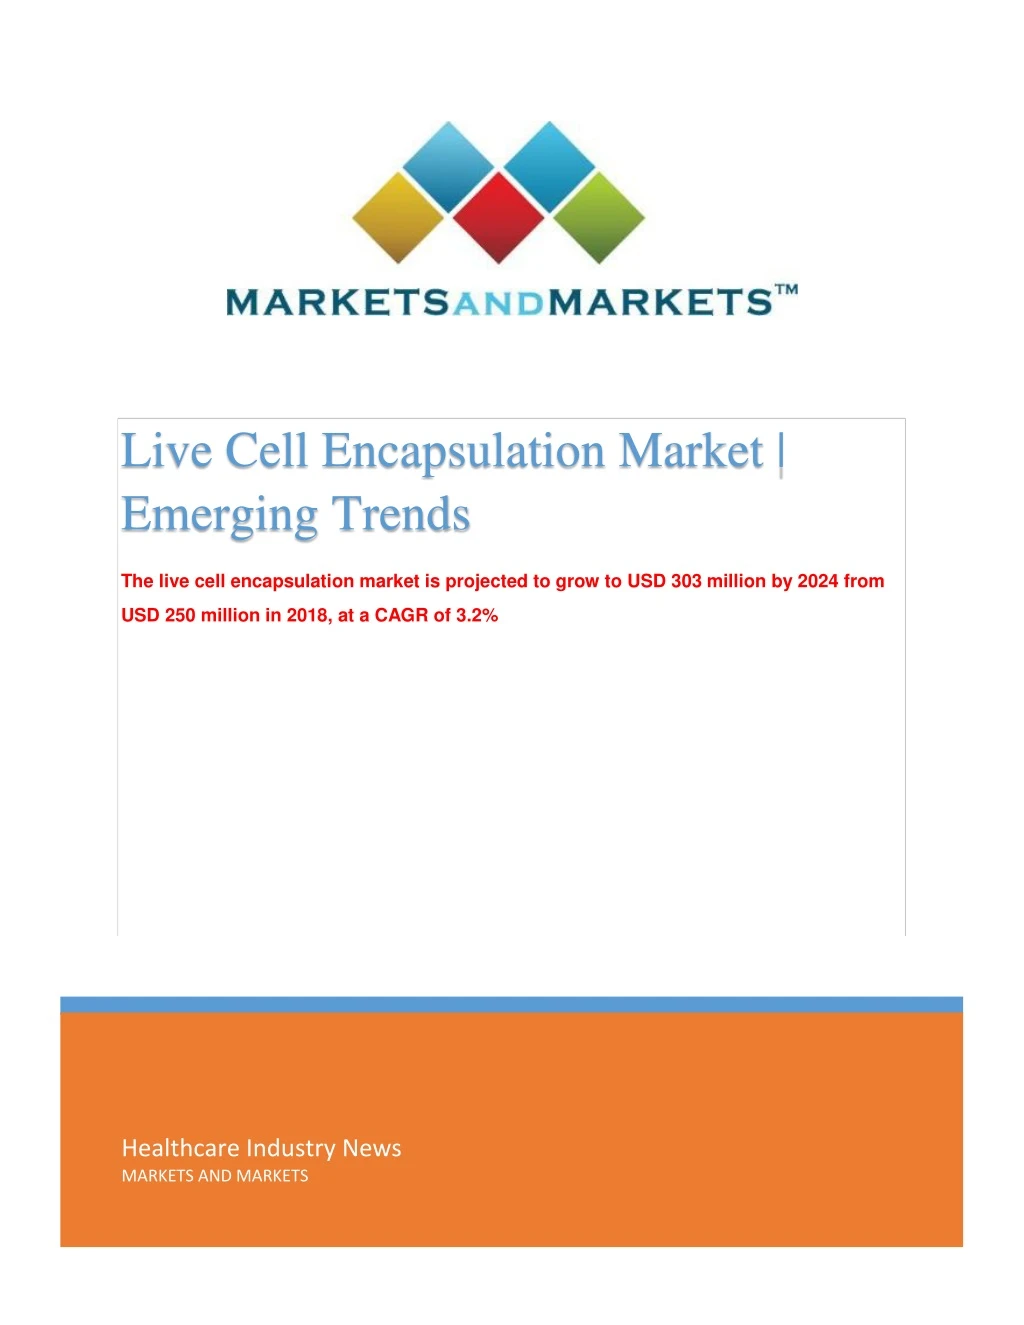 live cell encapsulation market emerging trends